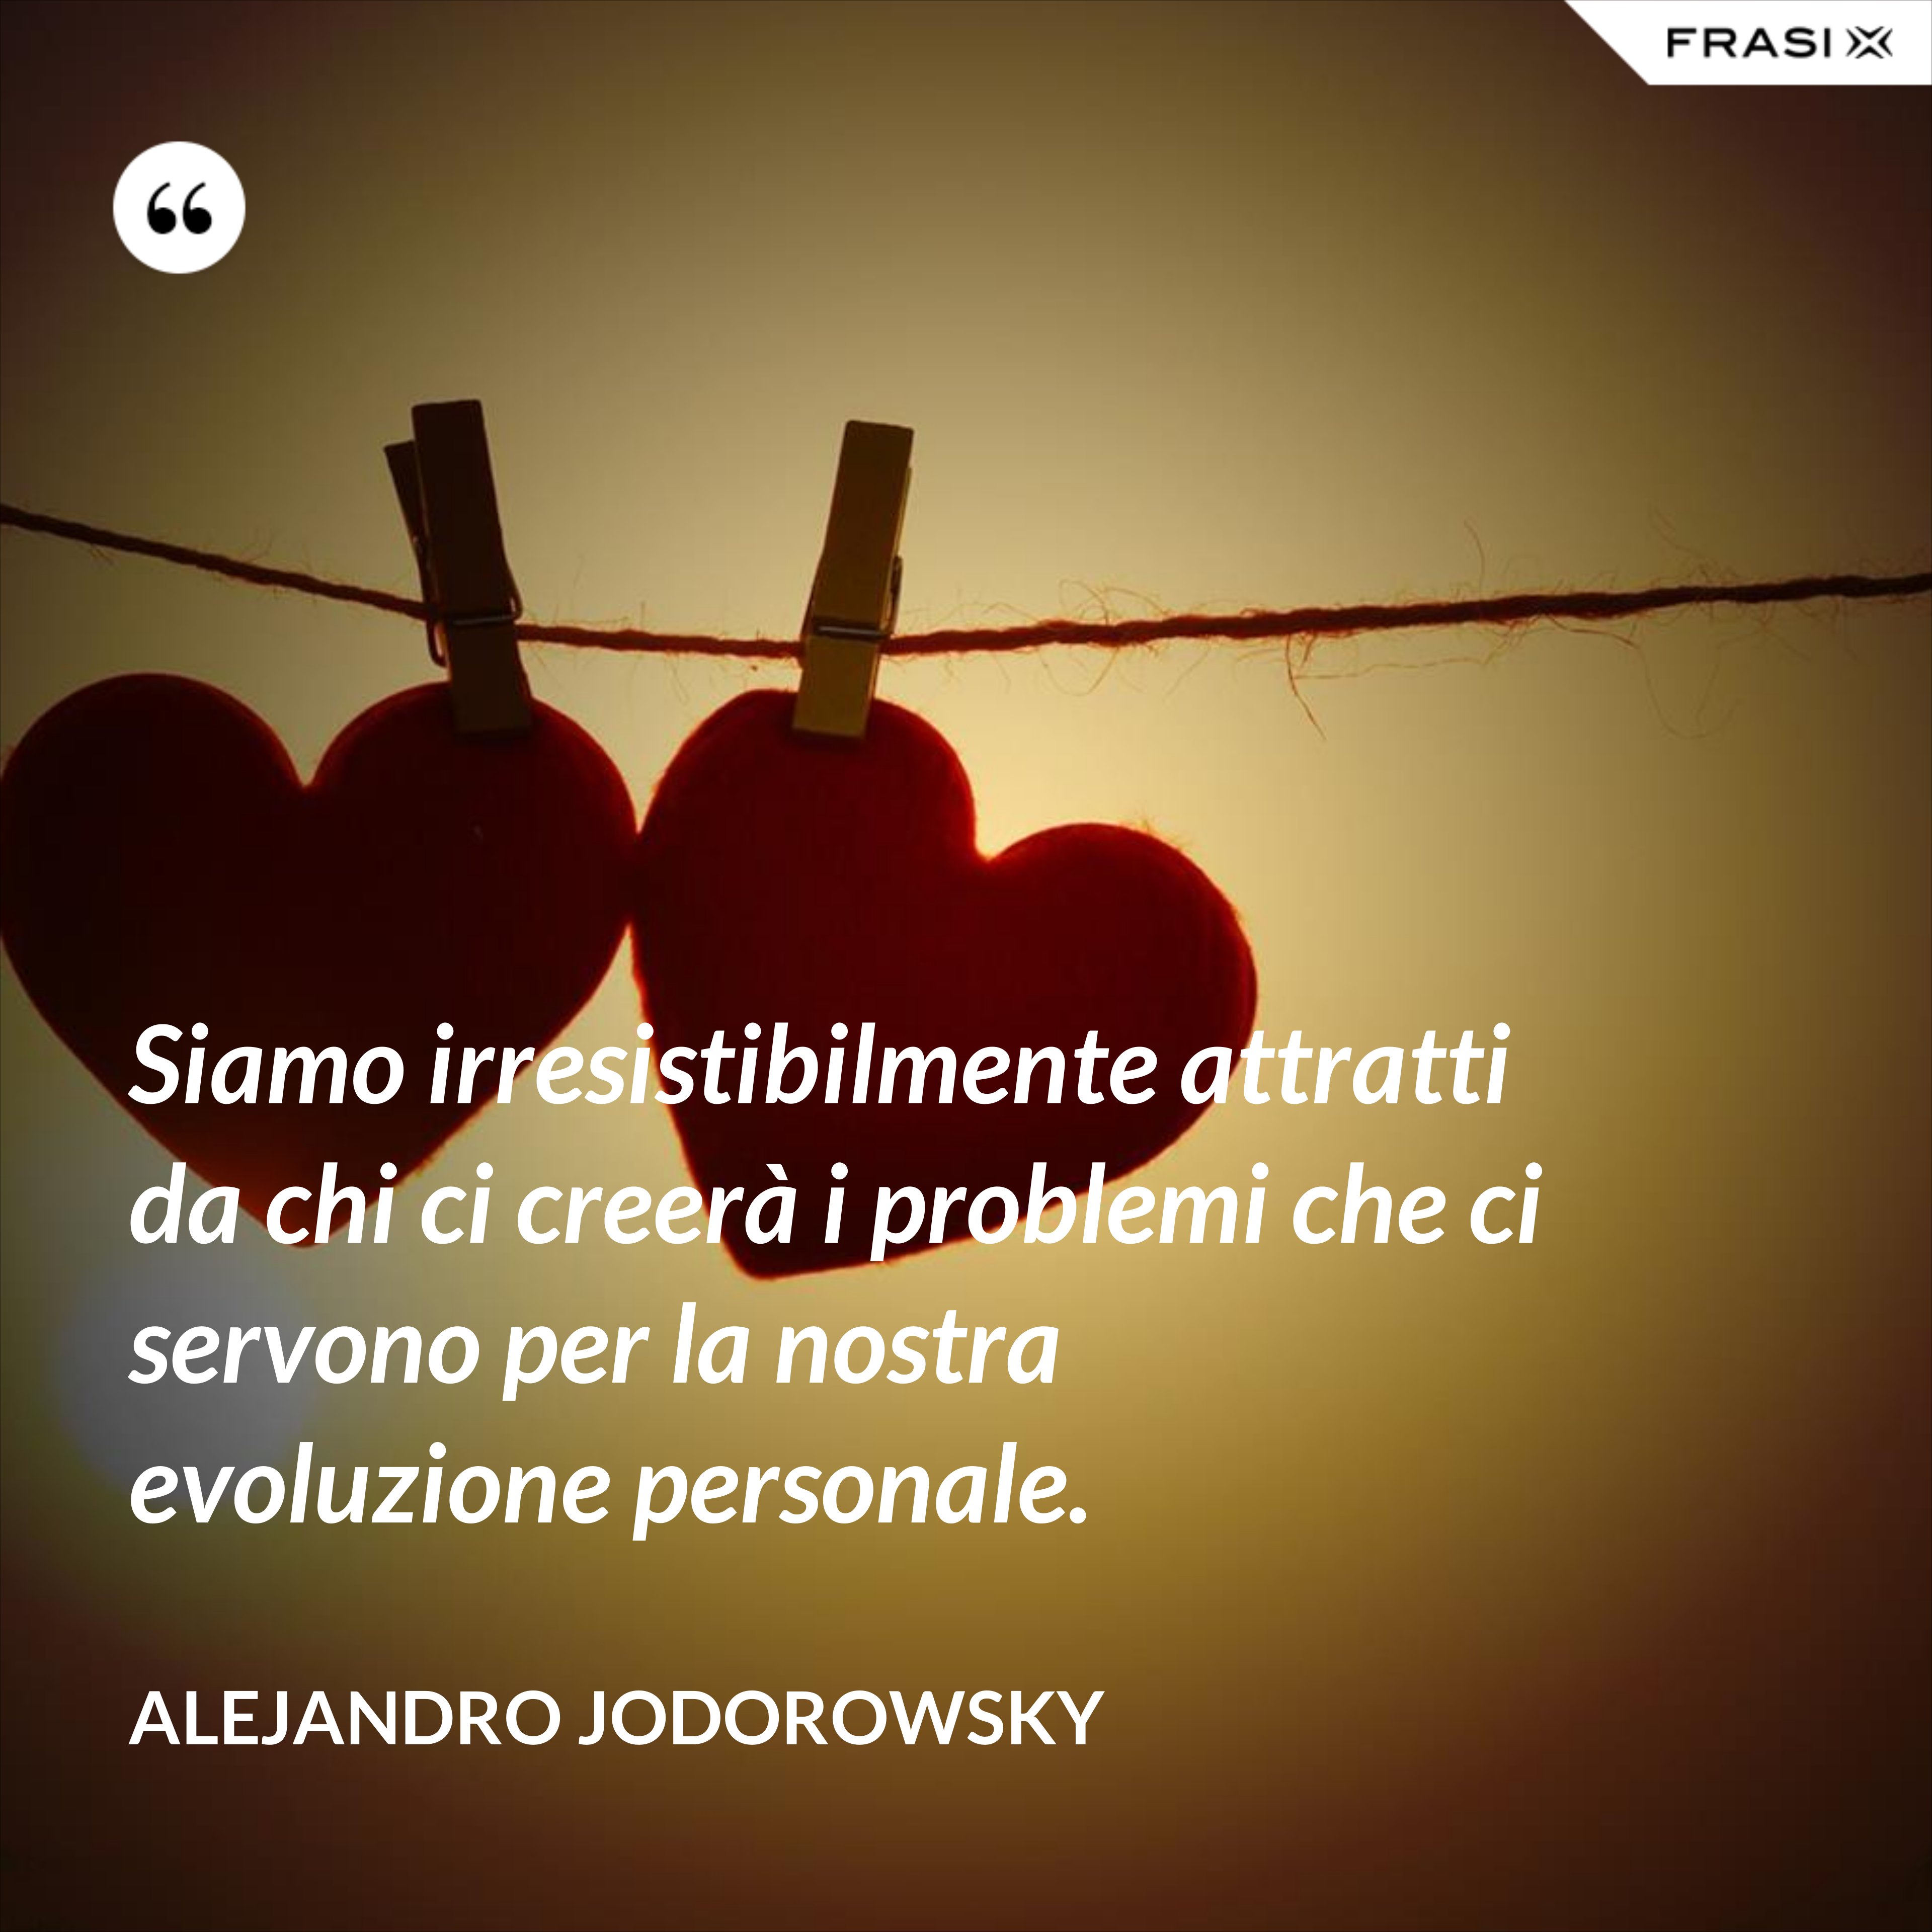 Siamo irresistibilmente attratti da chi ci creerà i problemi che ci servono per la nostra evoluzione personale. - Alejandro Jodorowsky